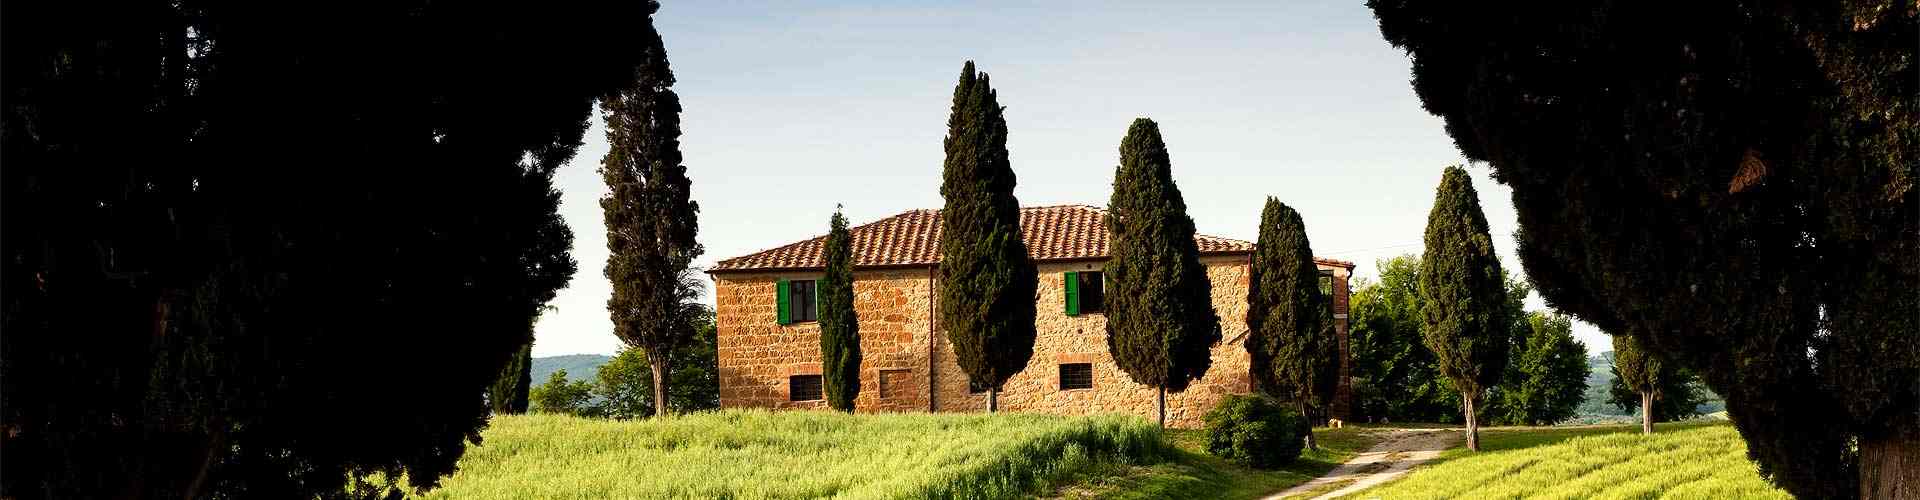 Casas rurales con pensión completa en Granada
          
          

